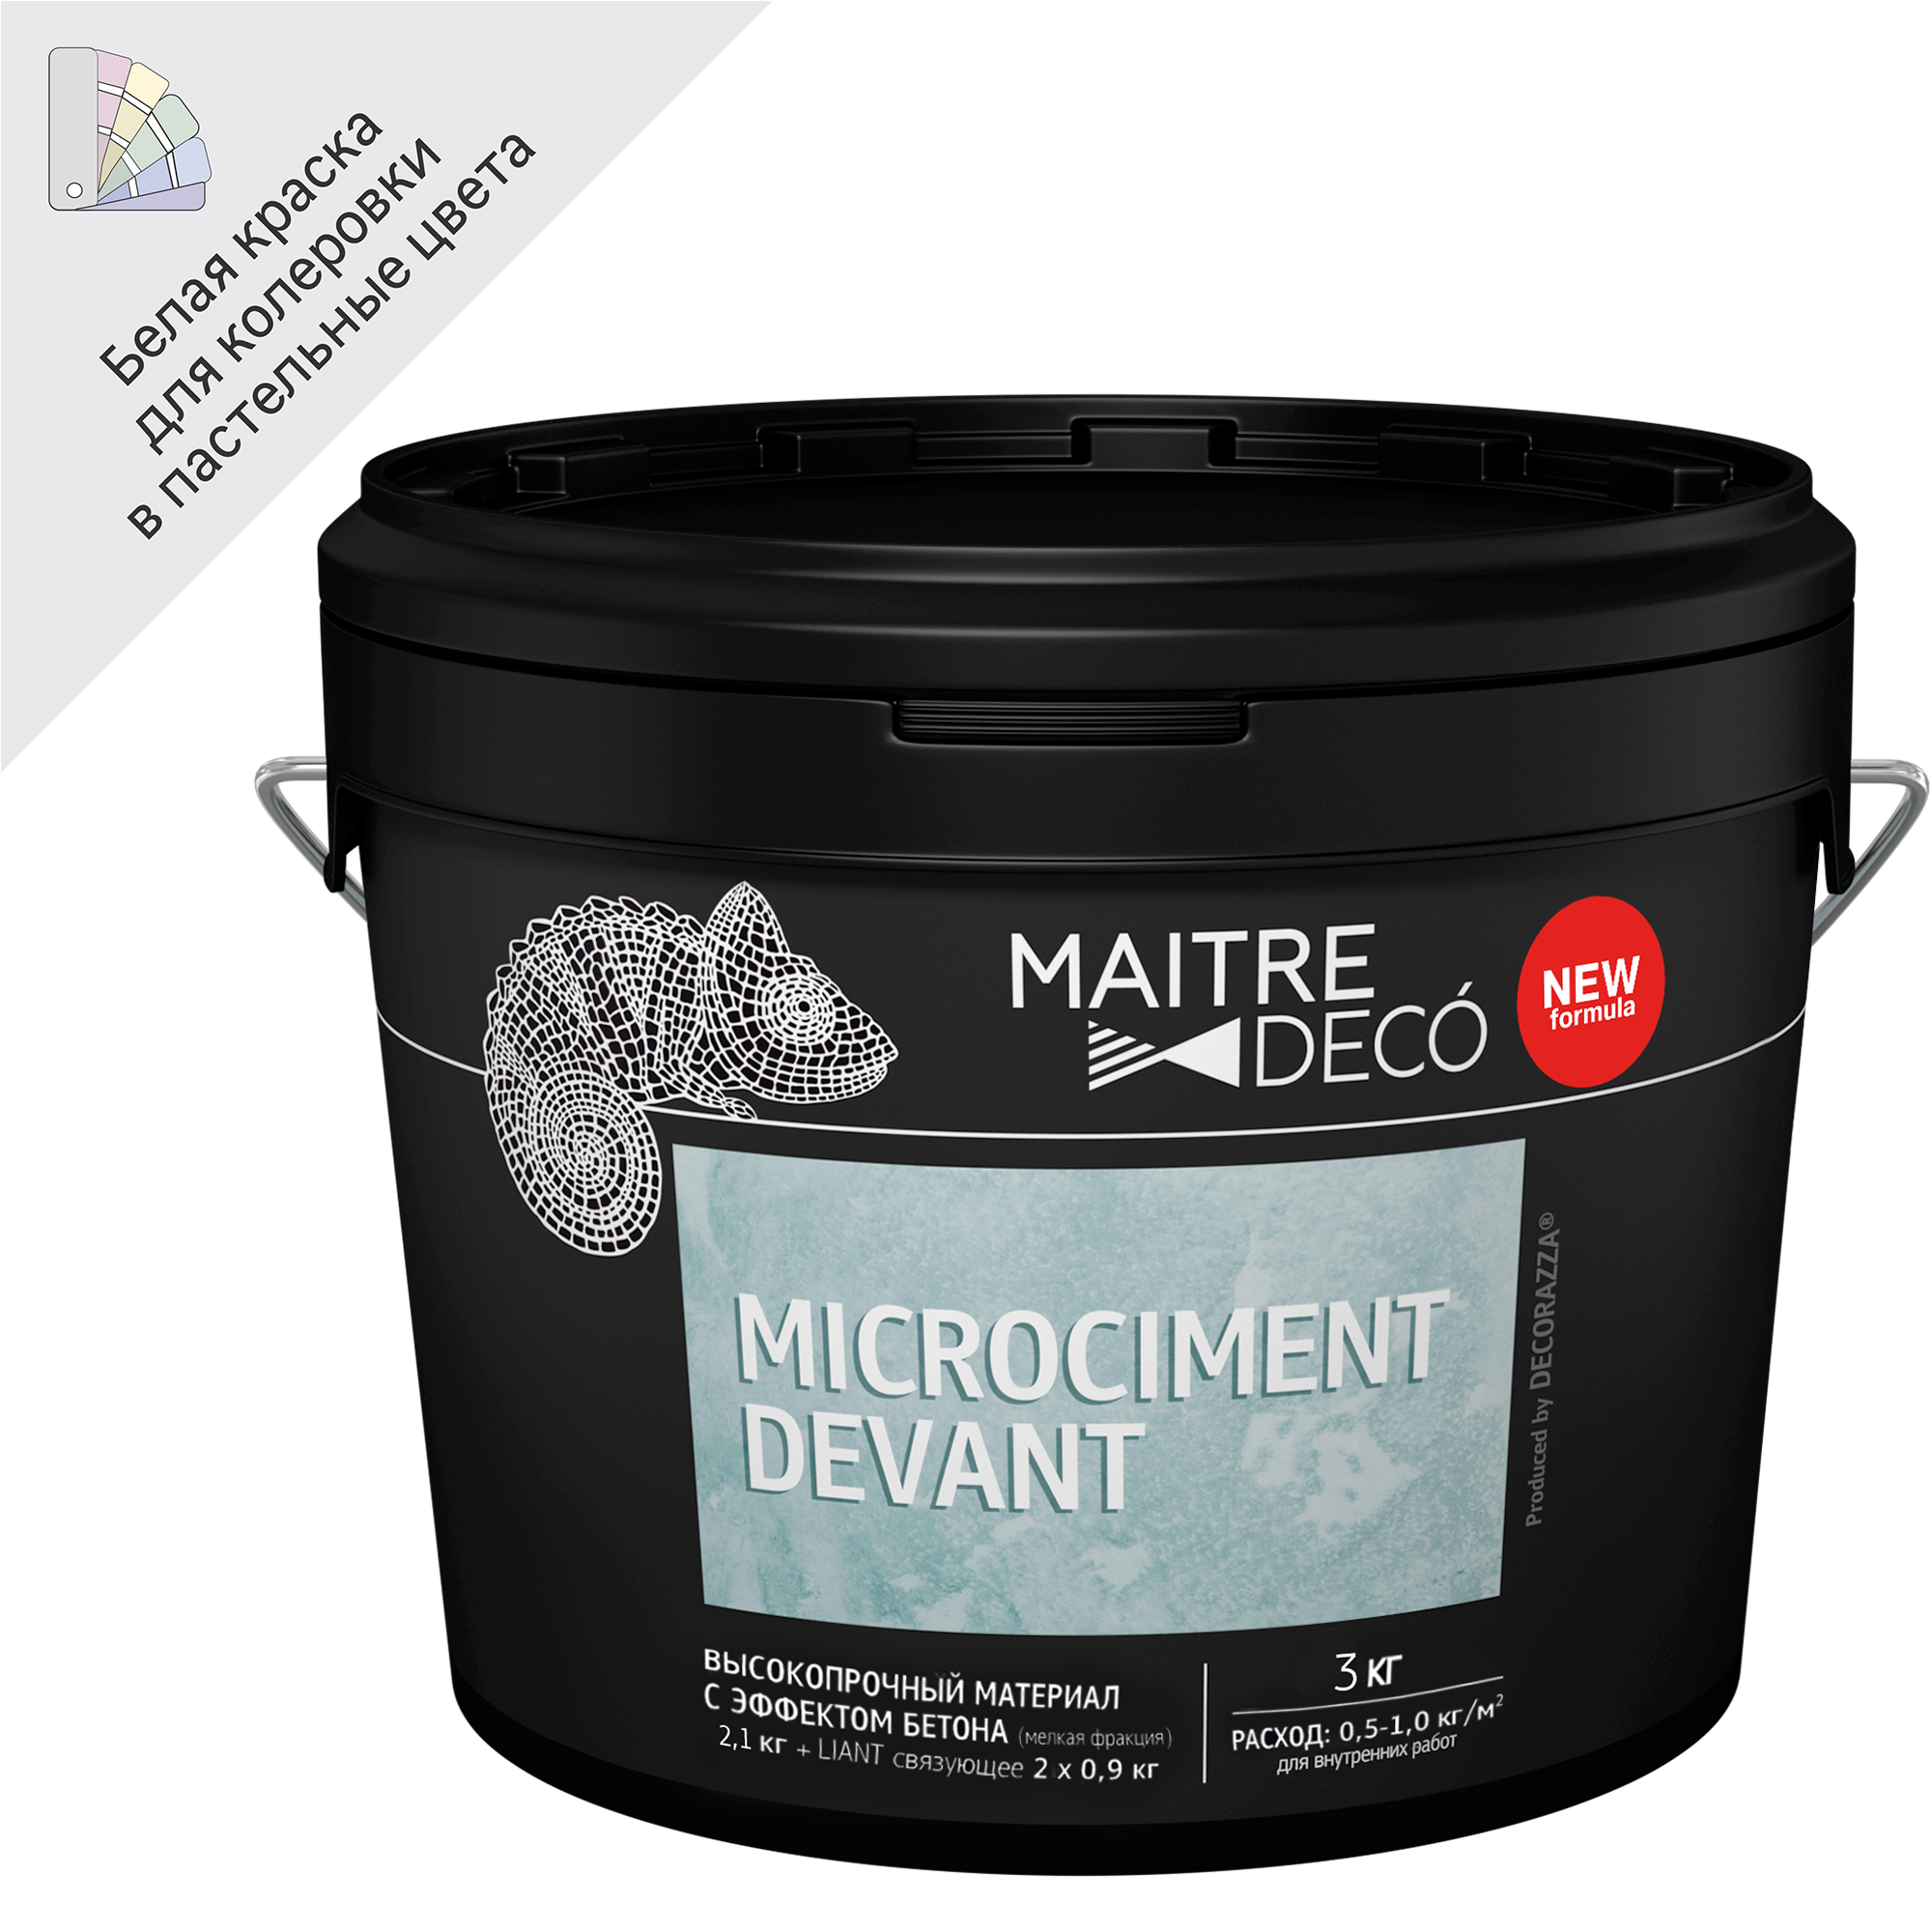 82891103 Высокопрочный материал с эффектом бетона «Microciment Devant» 3 кг STLM-0037594 MAITRE DECO